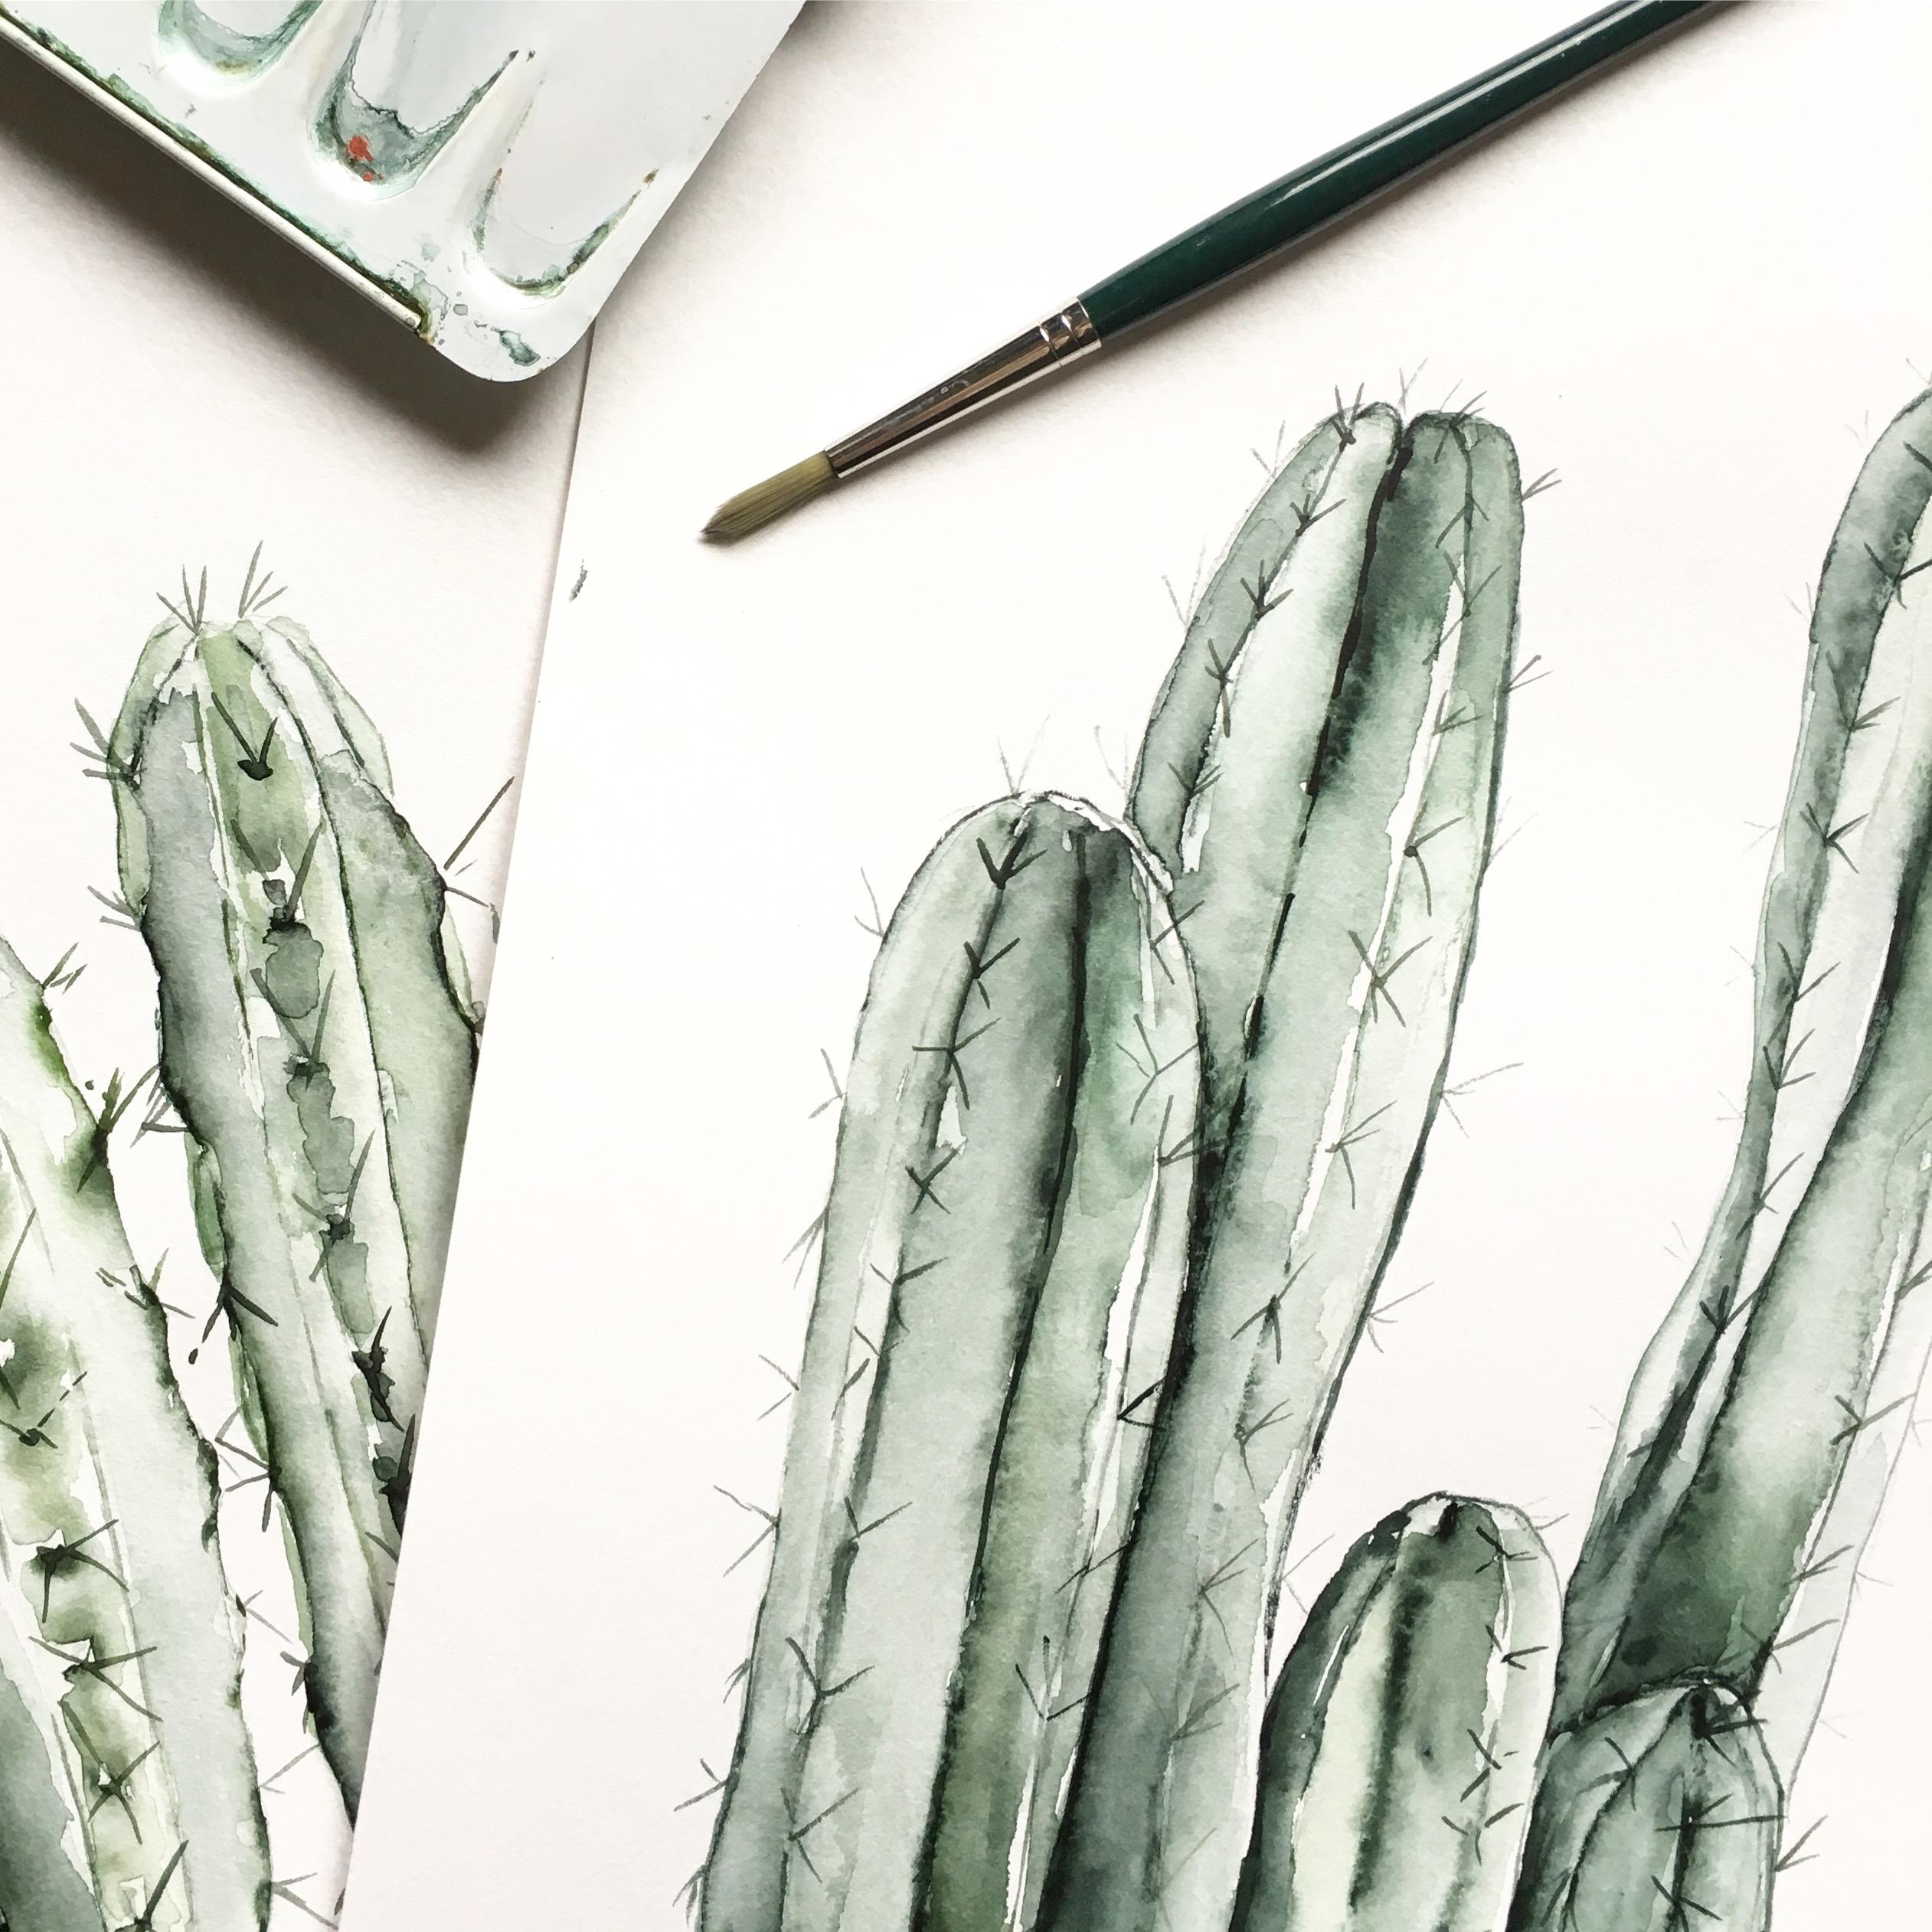 Paint and relax #kaktus #urbanjungle #diy #handmade #watercolor #schreibtisch #print